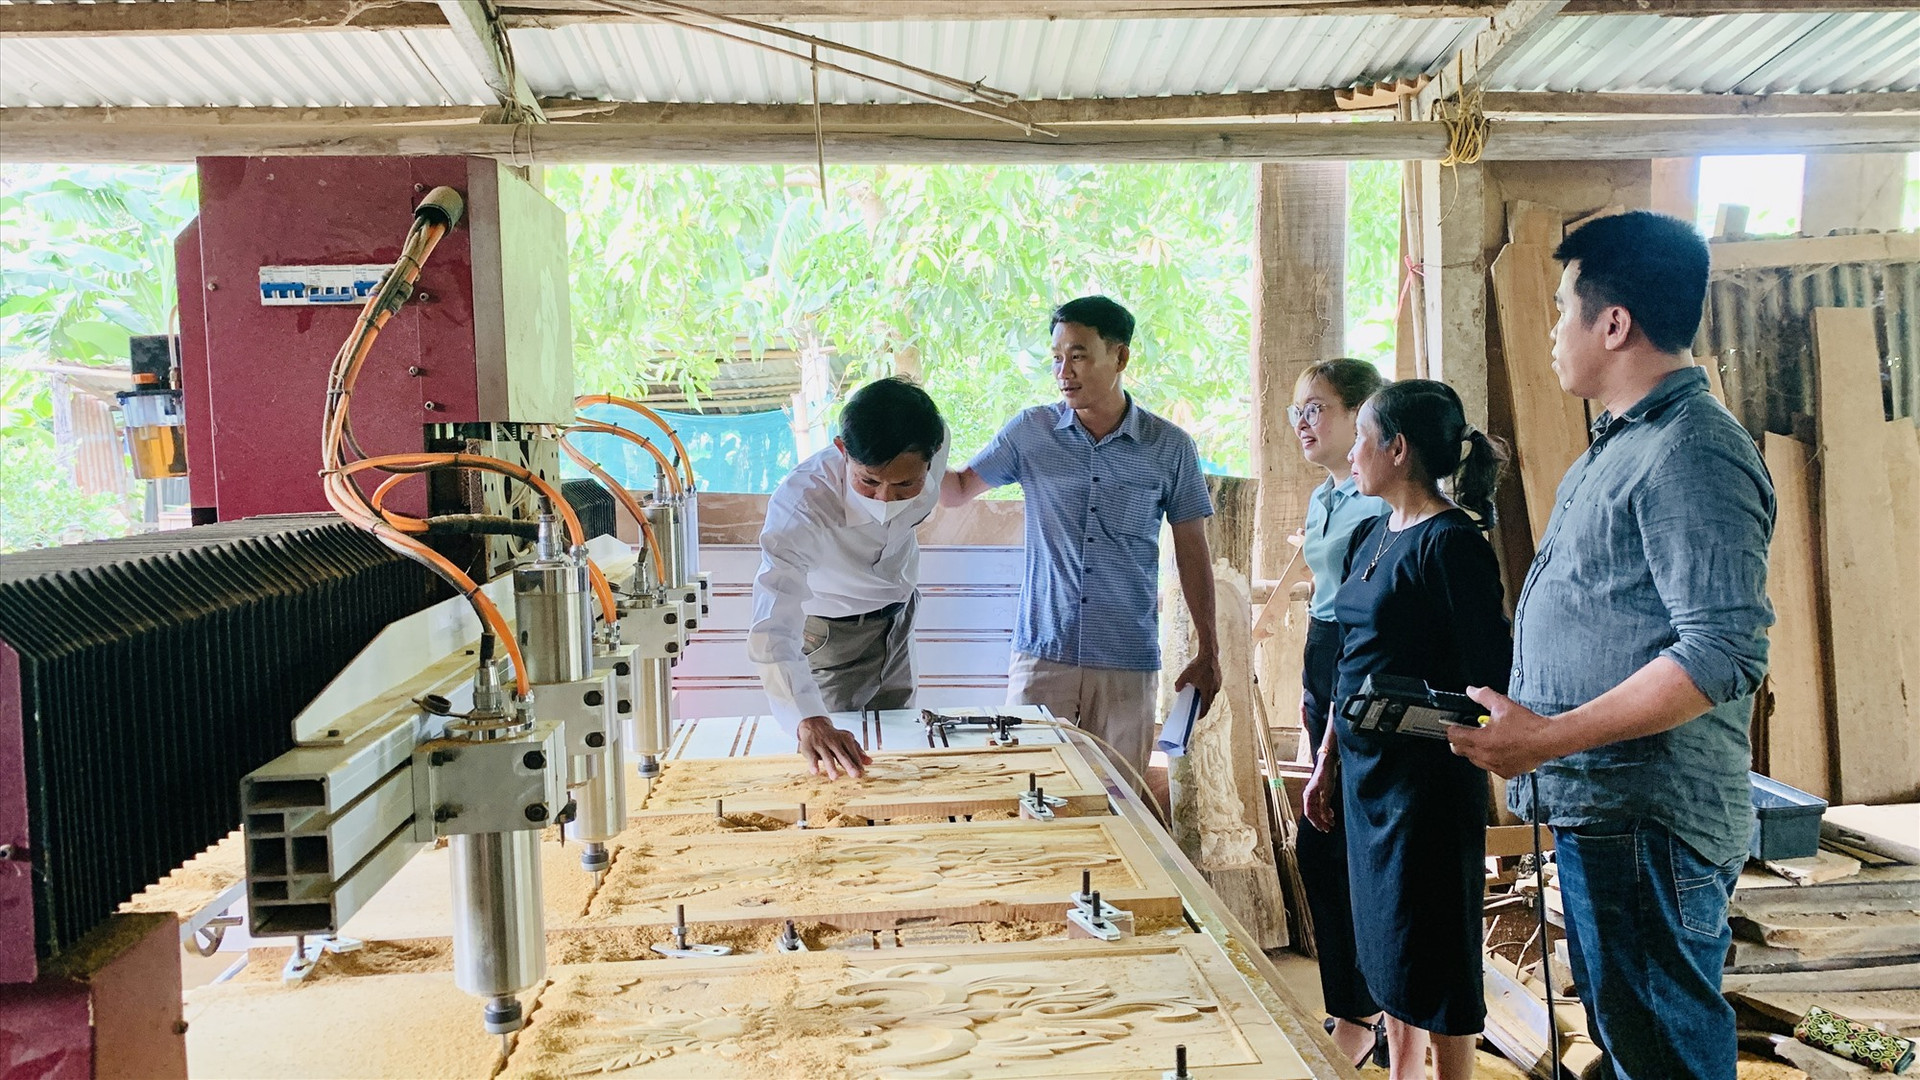 Đoàn nghiệm thu máy CNC tại cơ sở kinh doanh Lê Vũ Thể (TDP Trung Phước 2, thị trấn Trung Phước). Ảnh THÔNG -TÂM